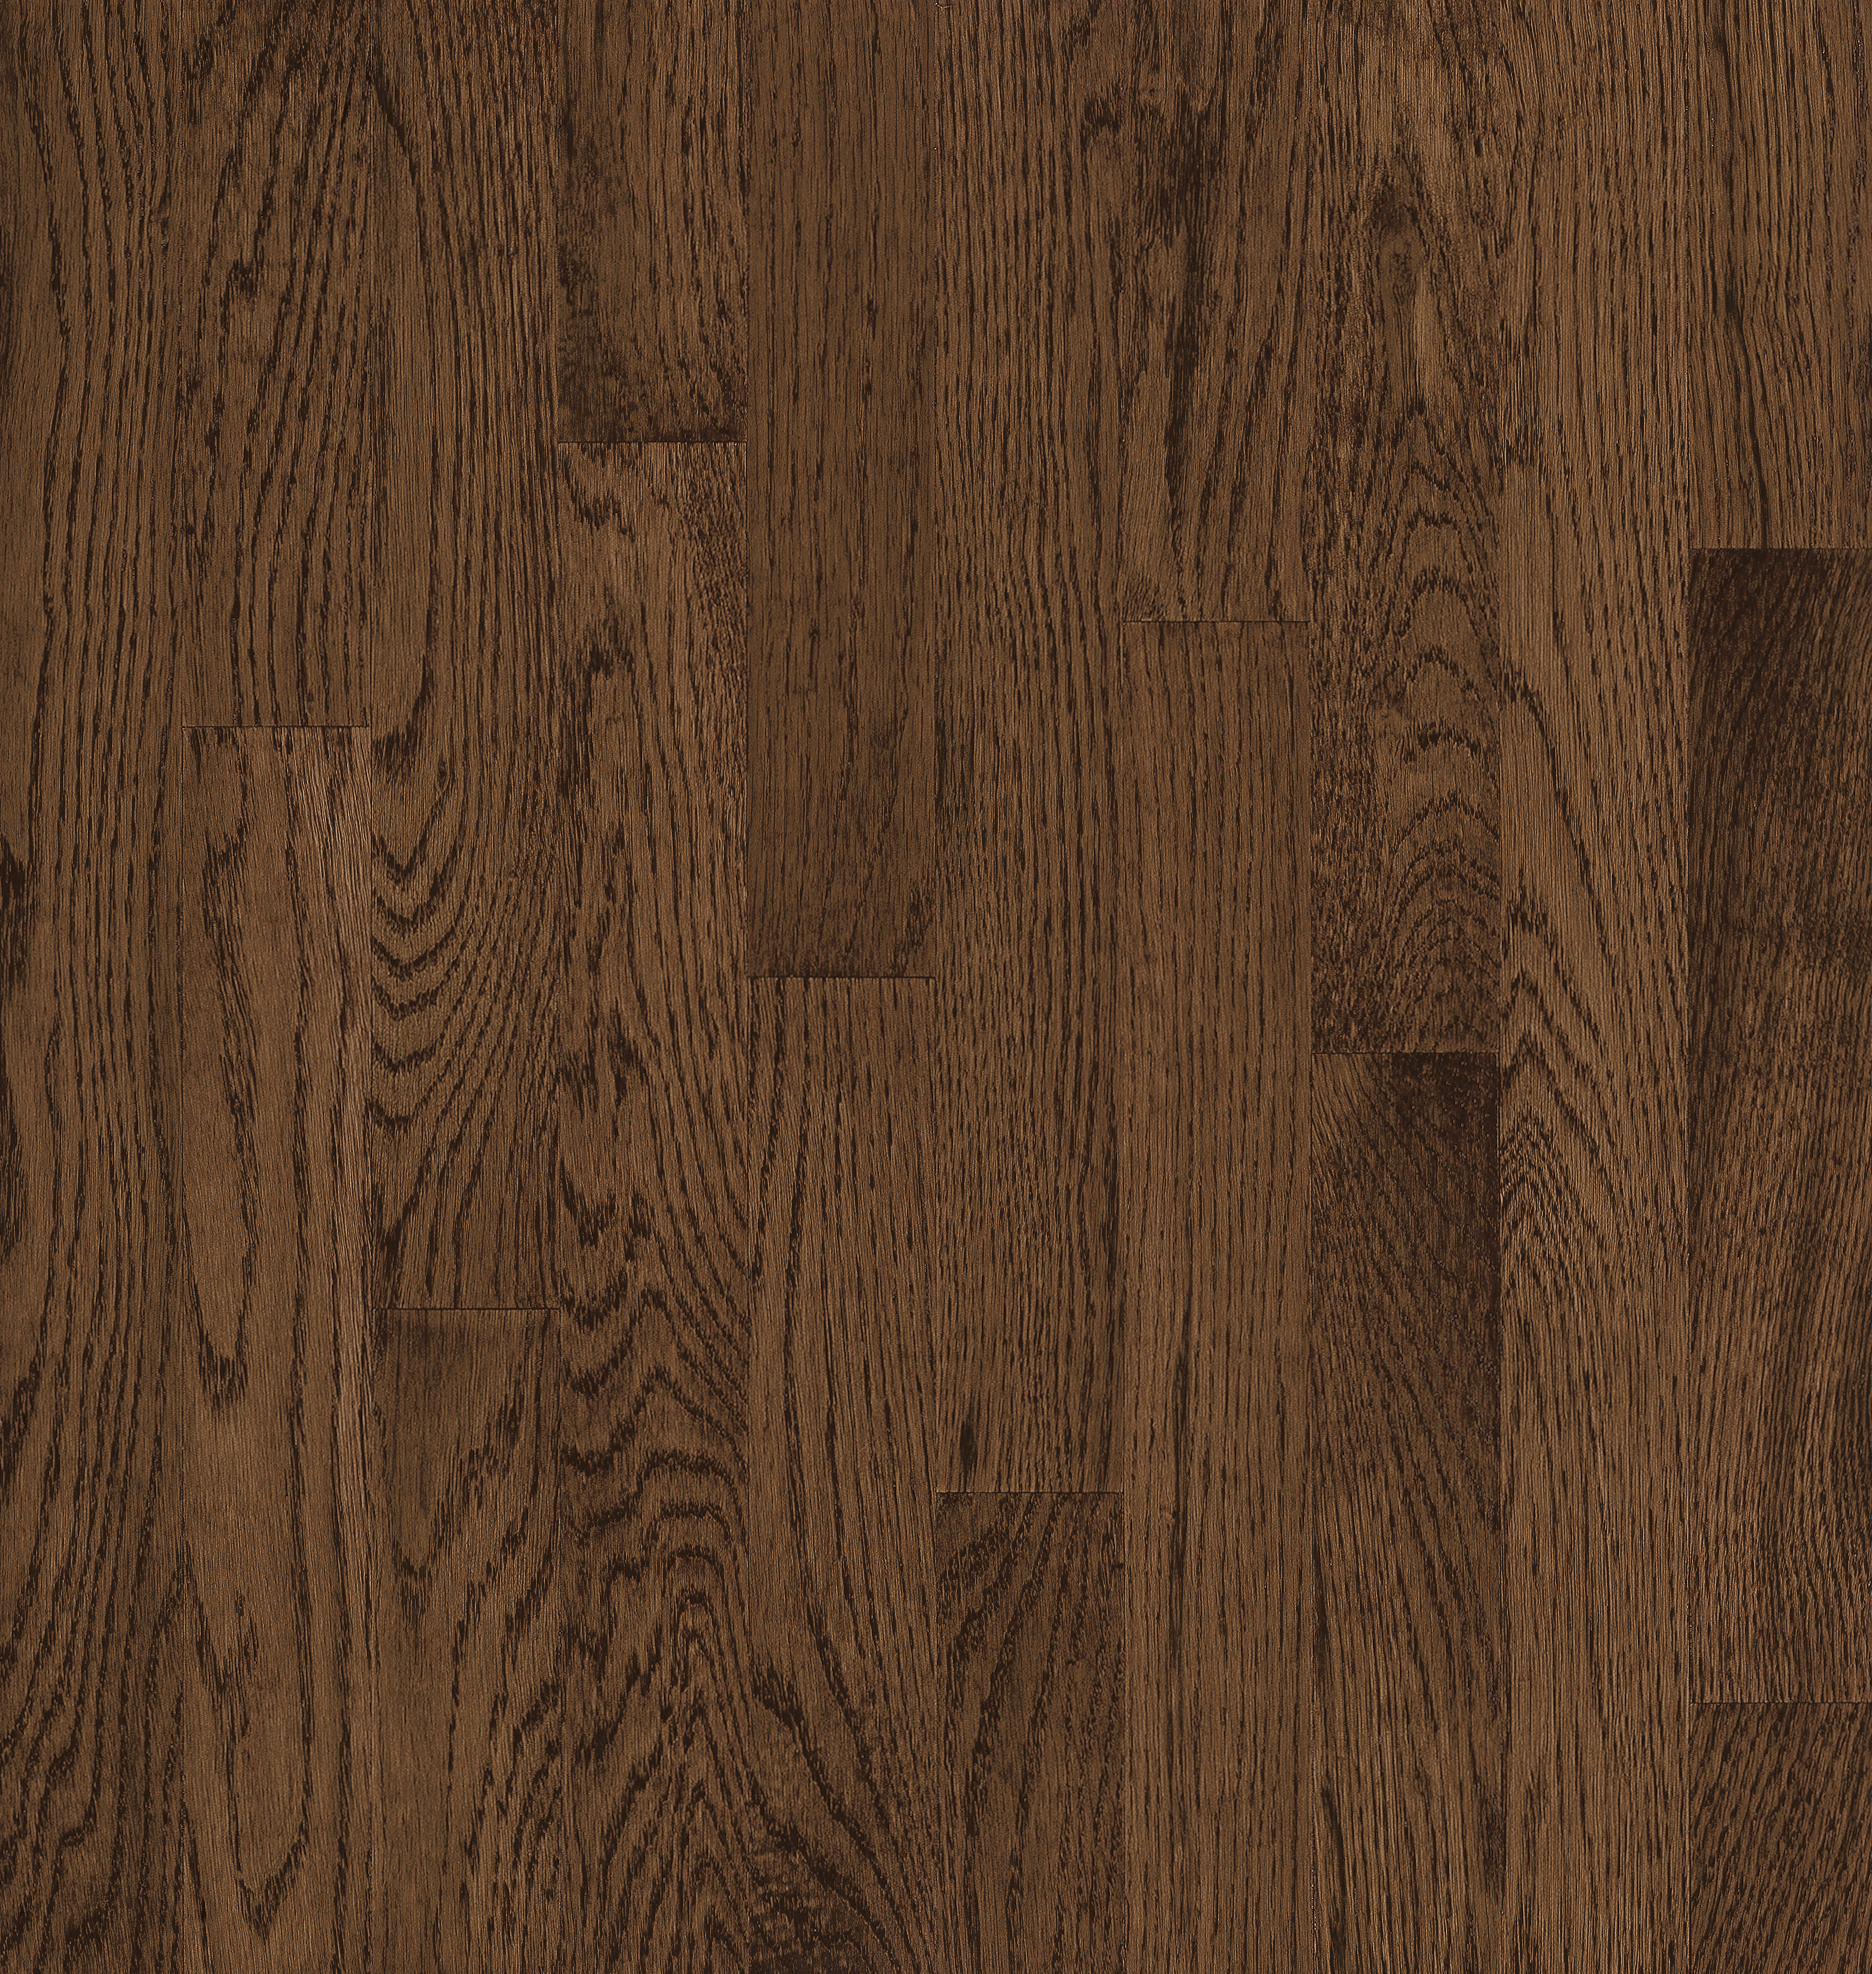 Oak Solid Hardwood C5031lg, 1 1 4 Hardwood Flooring